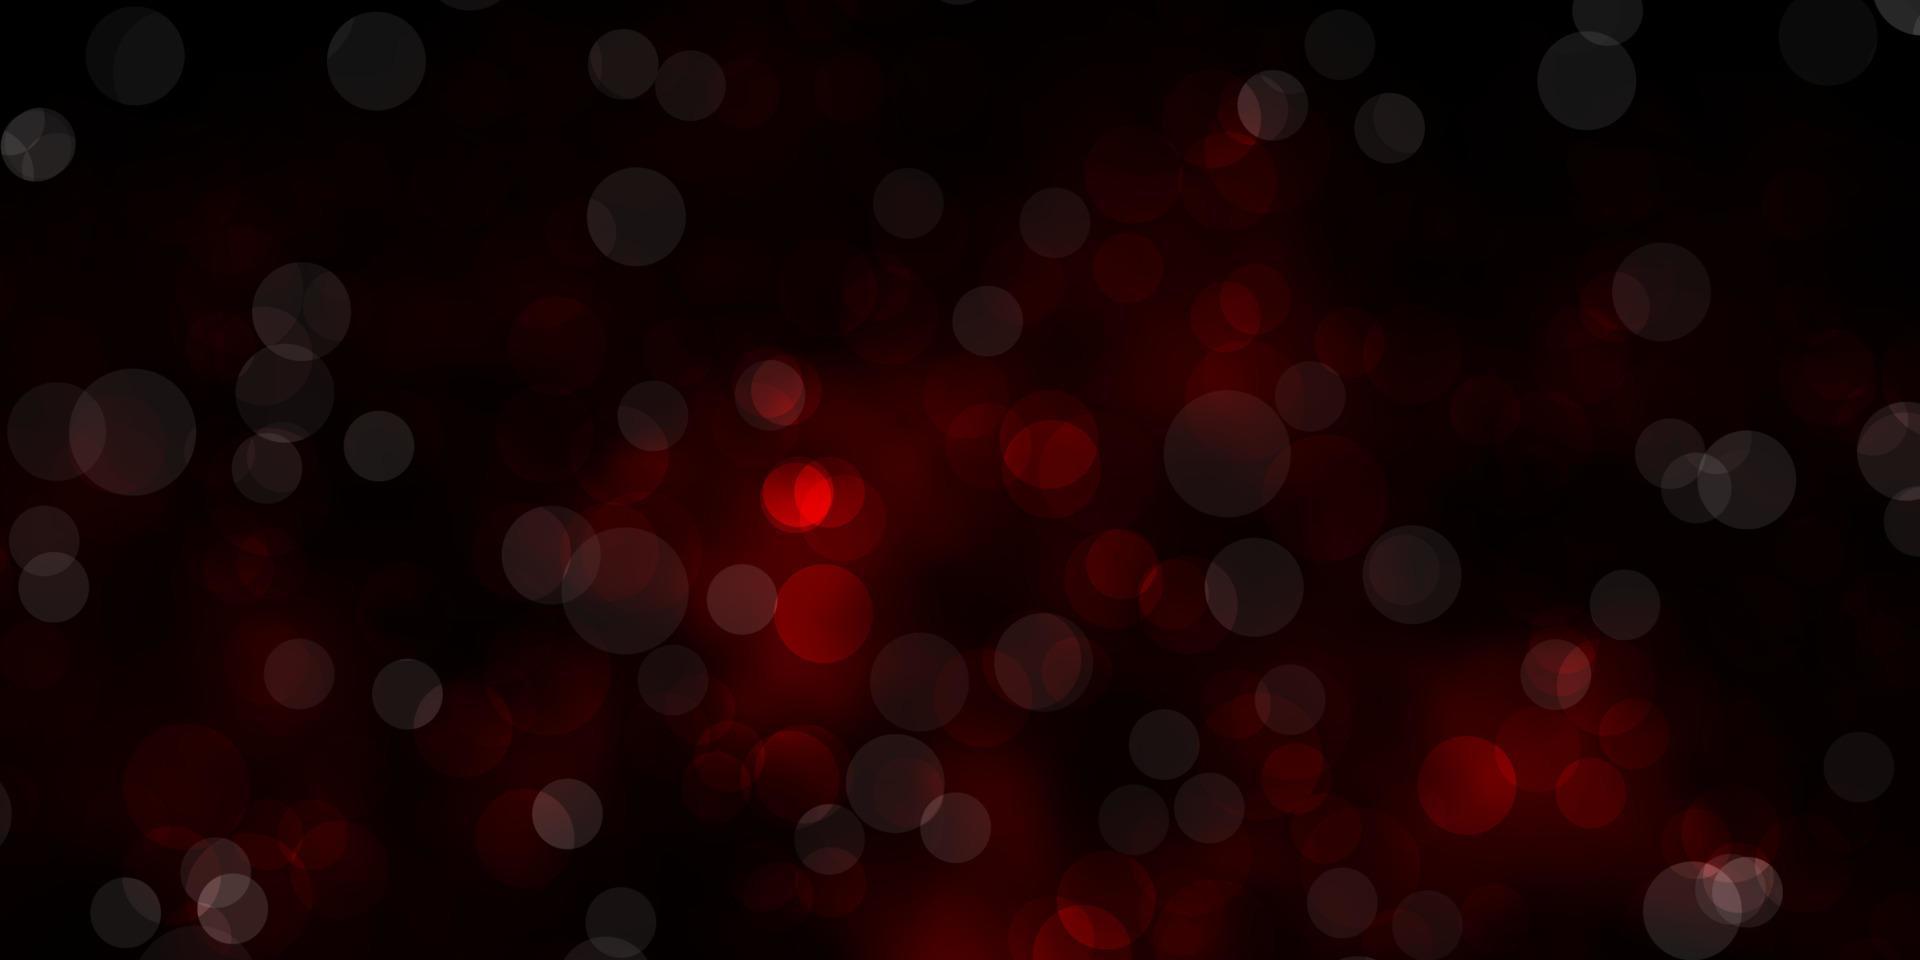 Telón de fondo de vector rojo oscuro con círculos.